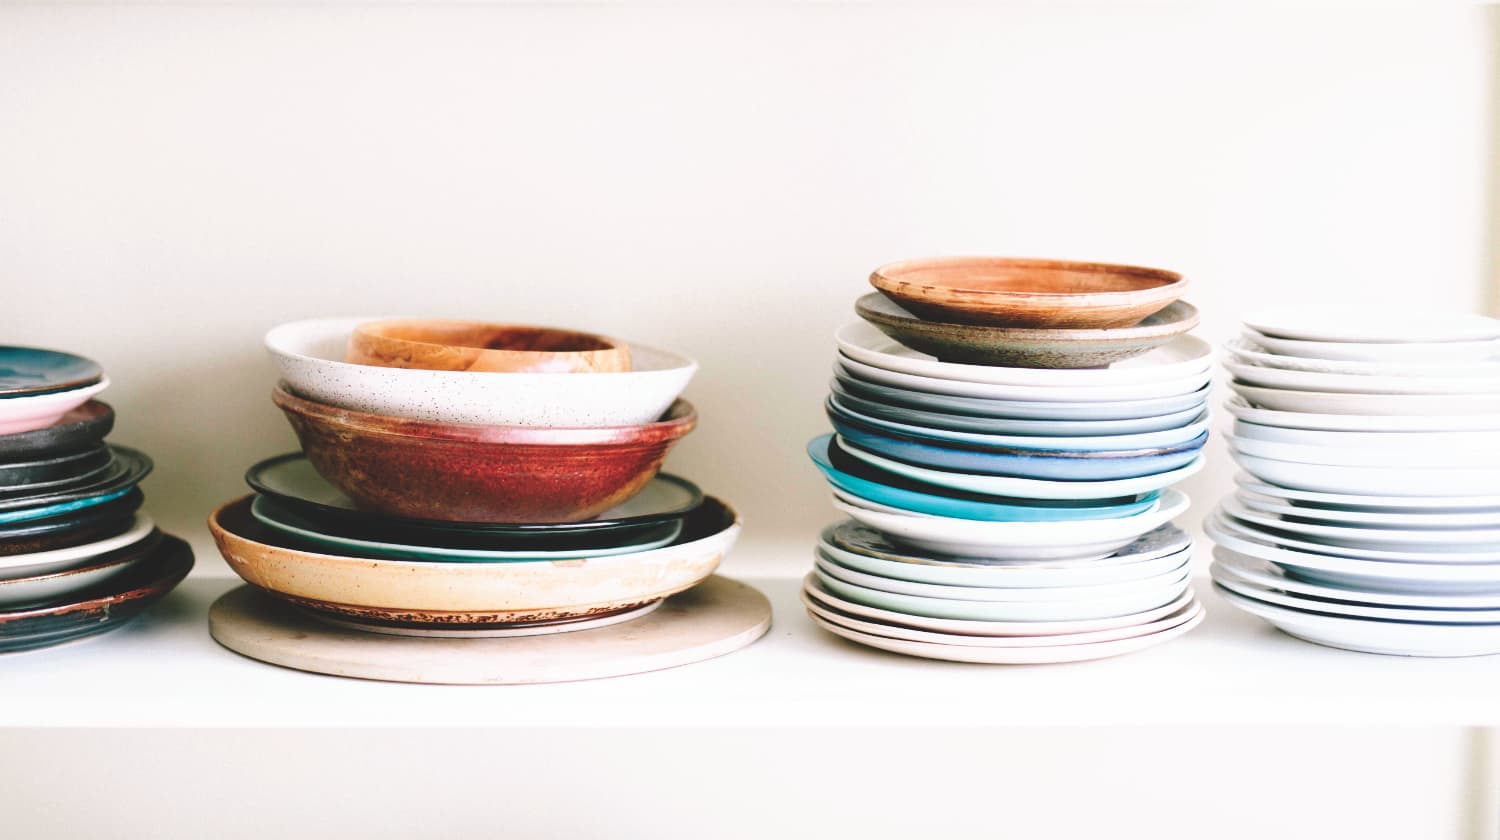 Nachhaltige Geschenke für die Küche - Keramik & Geschirr